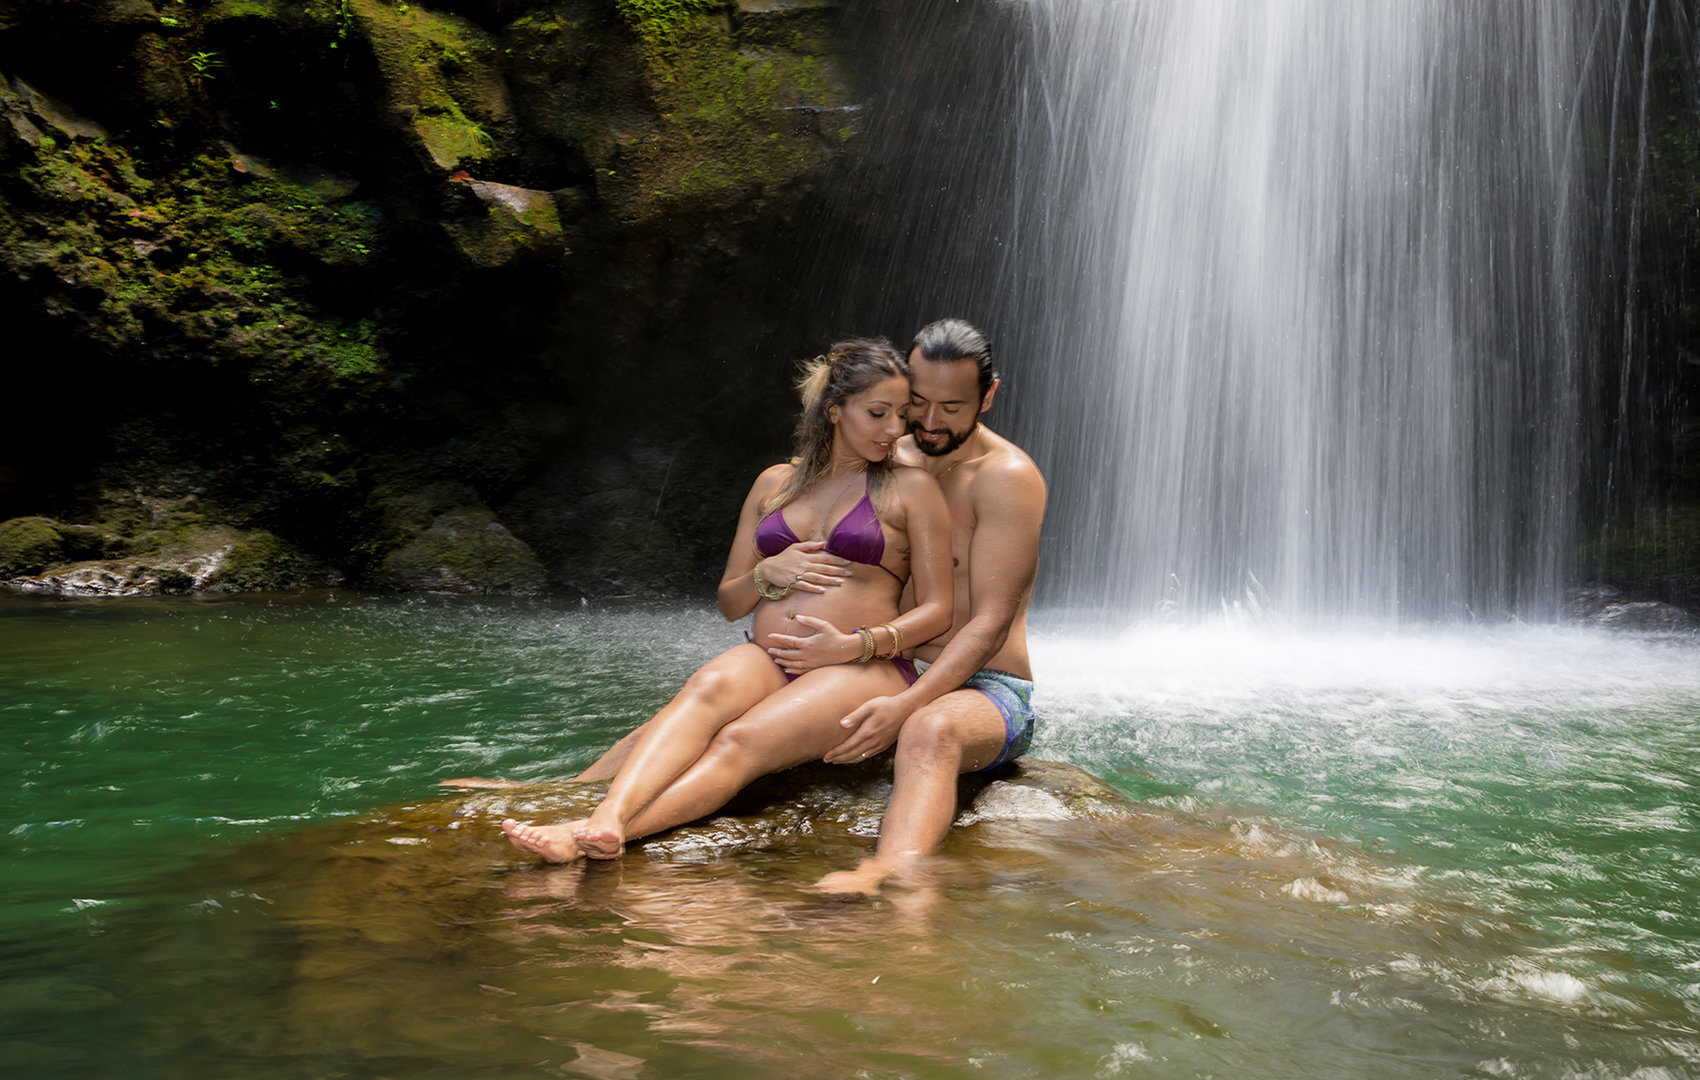 Waterfall portraits on Maui